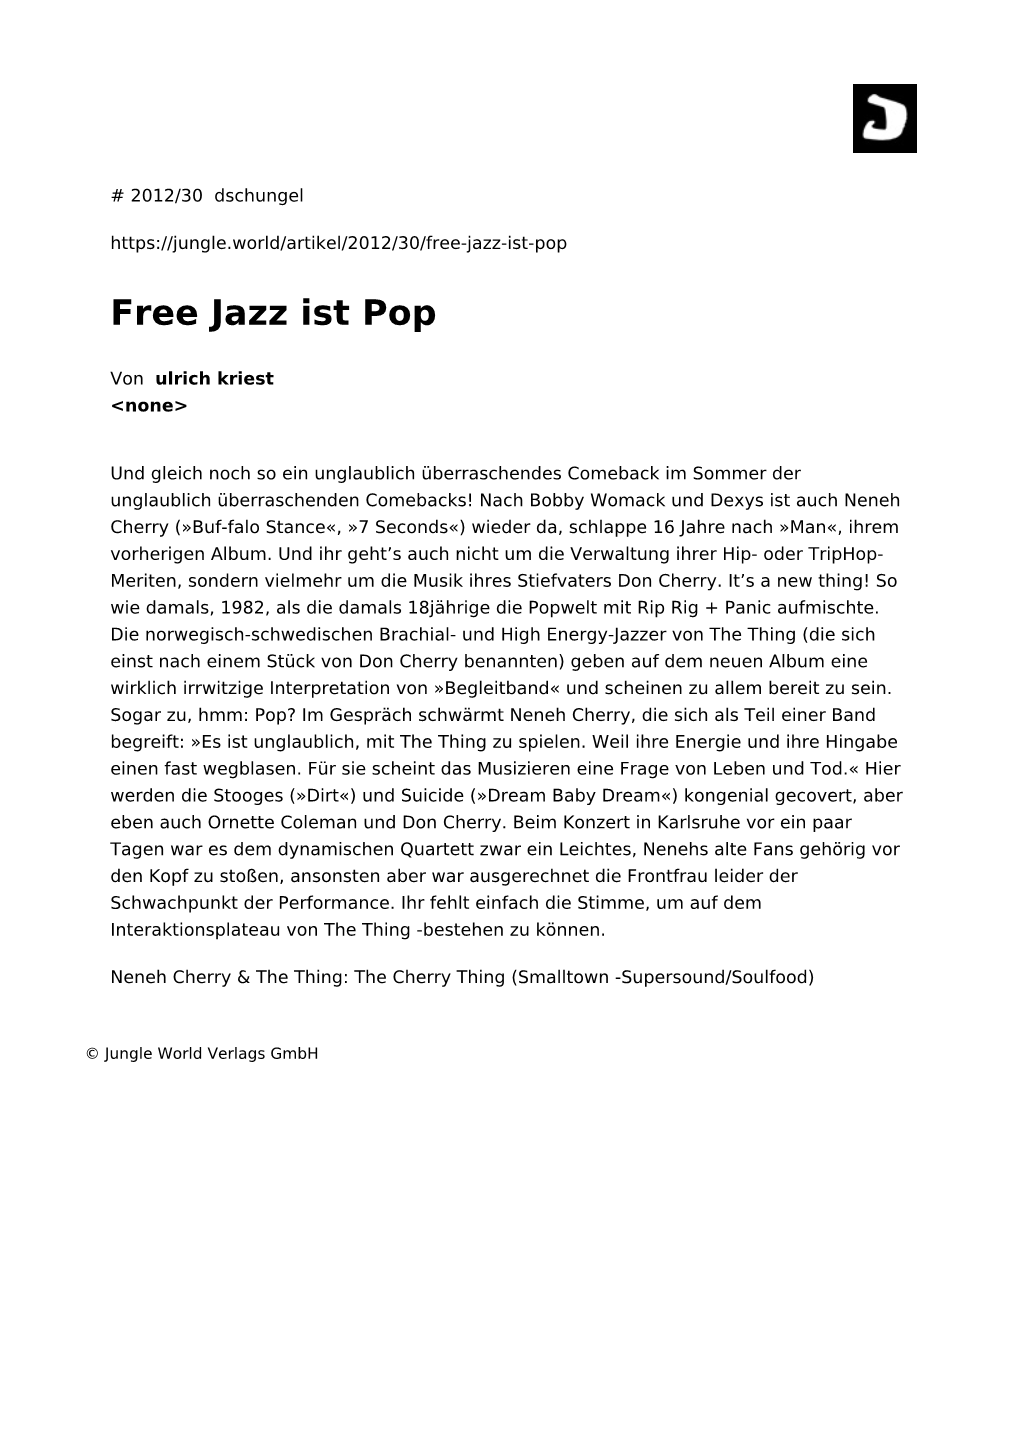 Free Jazz Ist Pop